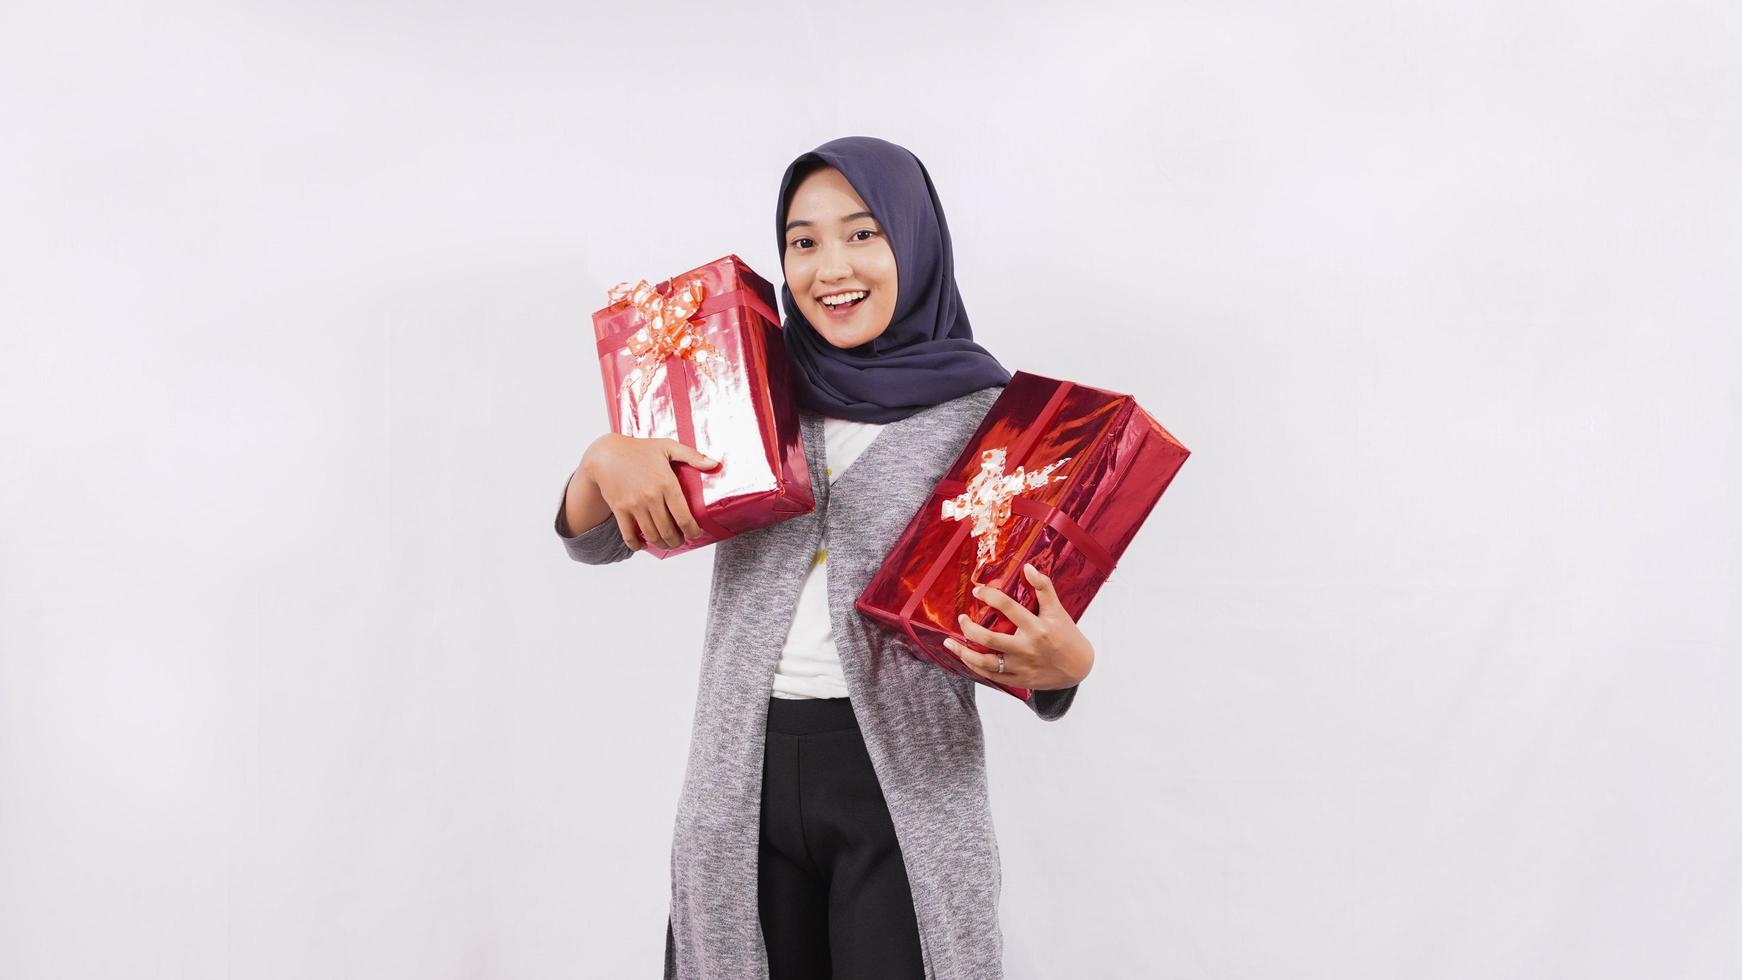 jolie fille asiatique très heureuse avec le cadeau isolé sur fond blanc photo